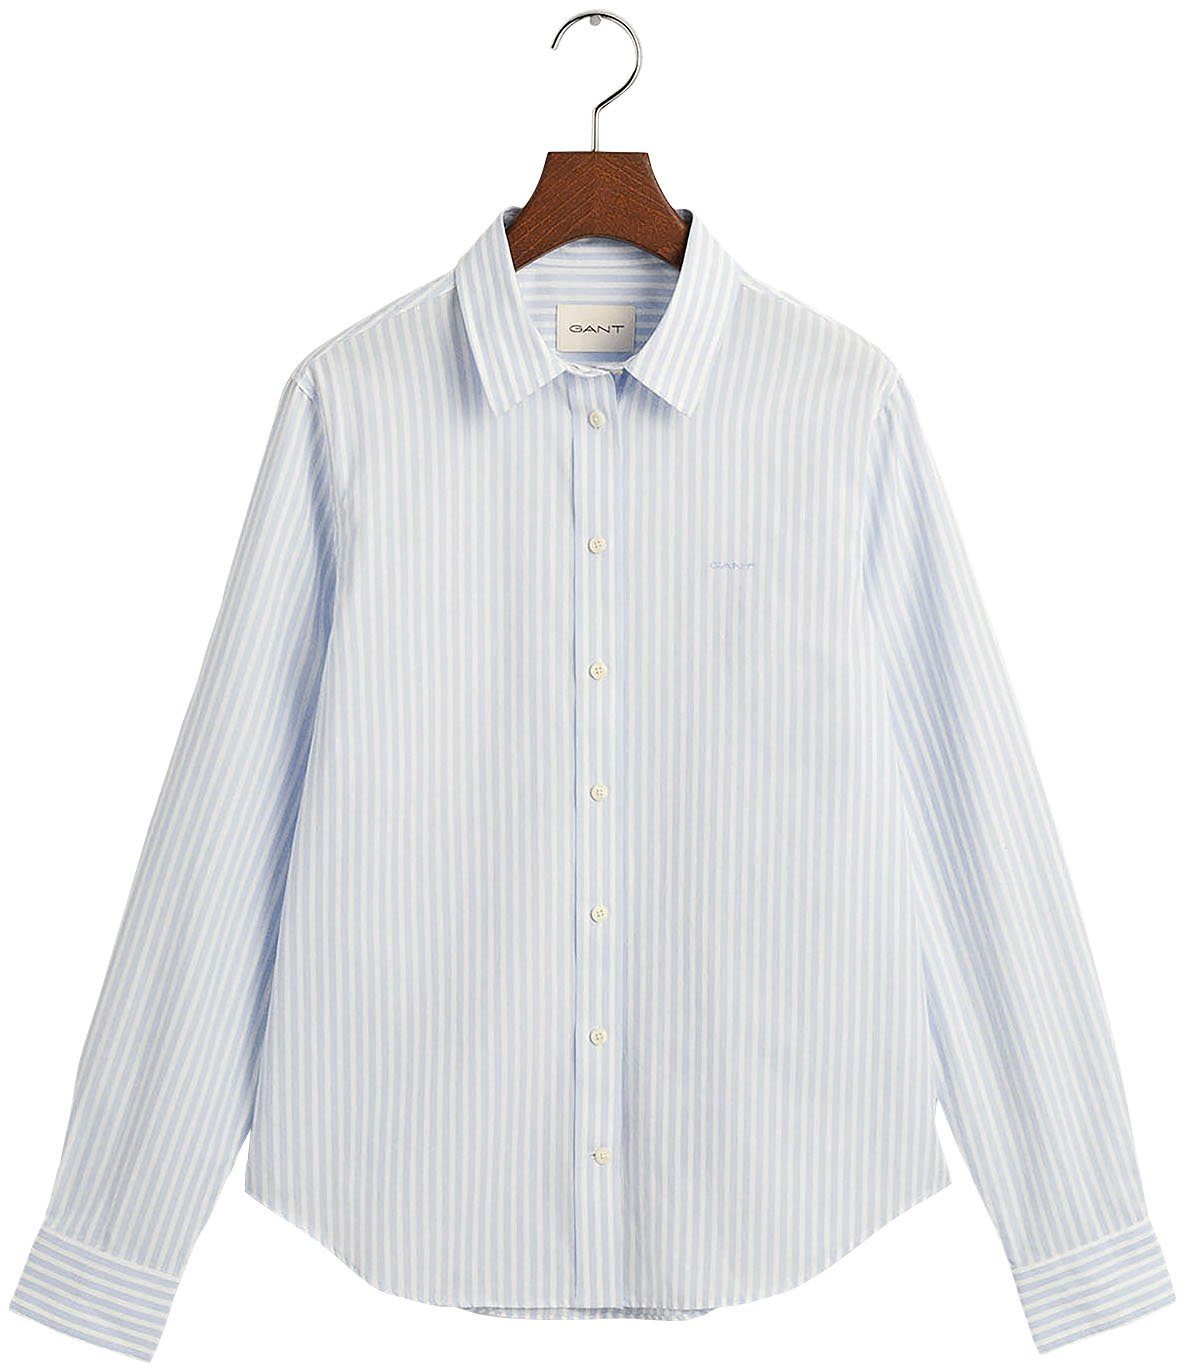 STRIPED POPLIN mit einer Brust Light auf der kleinen REG Hemdbluse Gant Logostickerei blue SHIRT